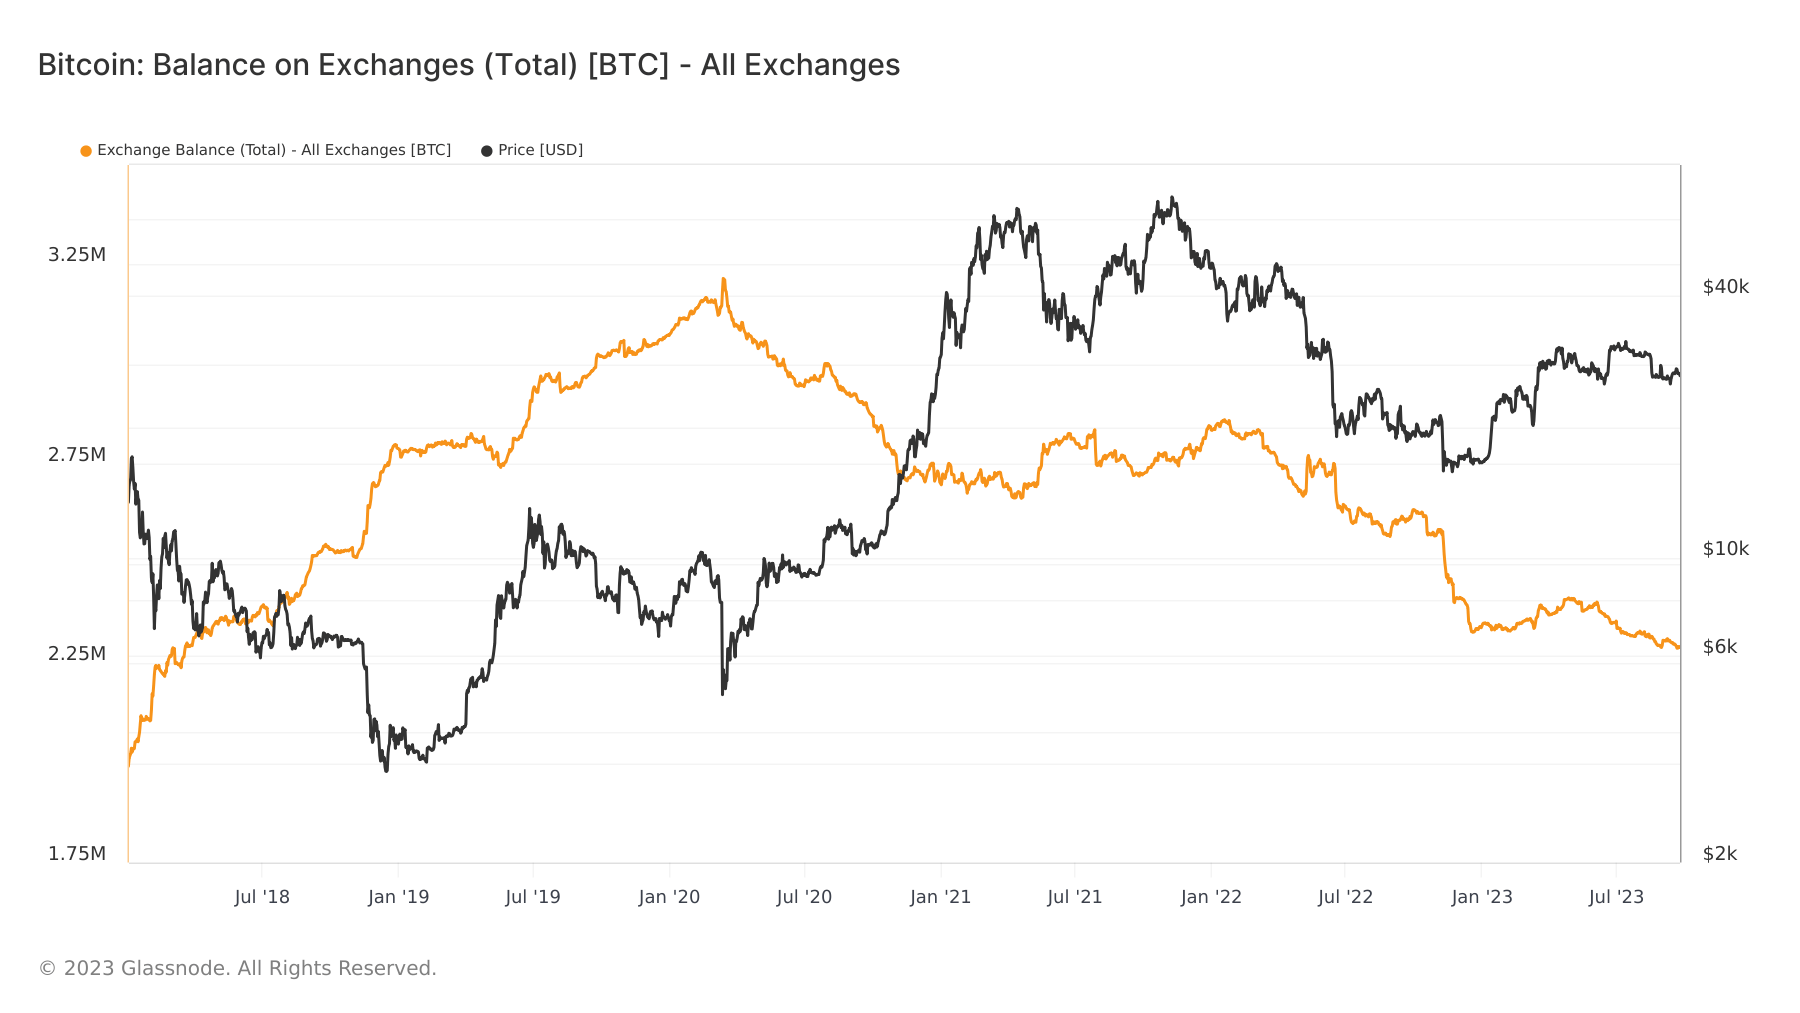 bitcoin exchange balance 2018 2023